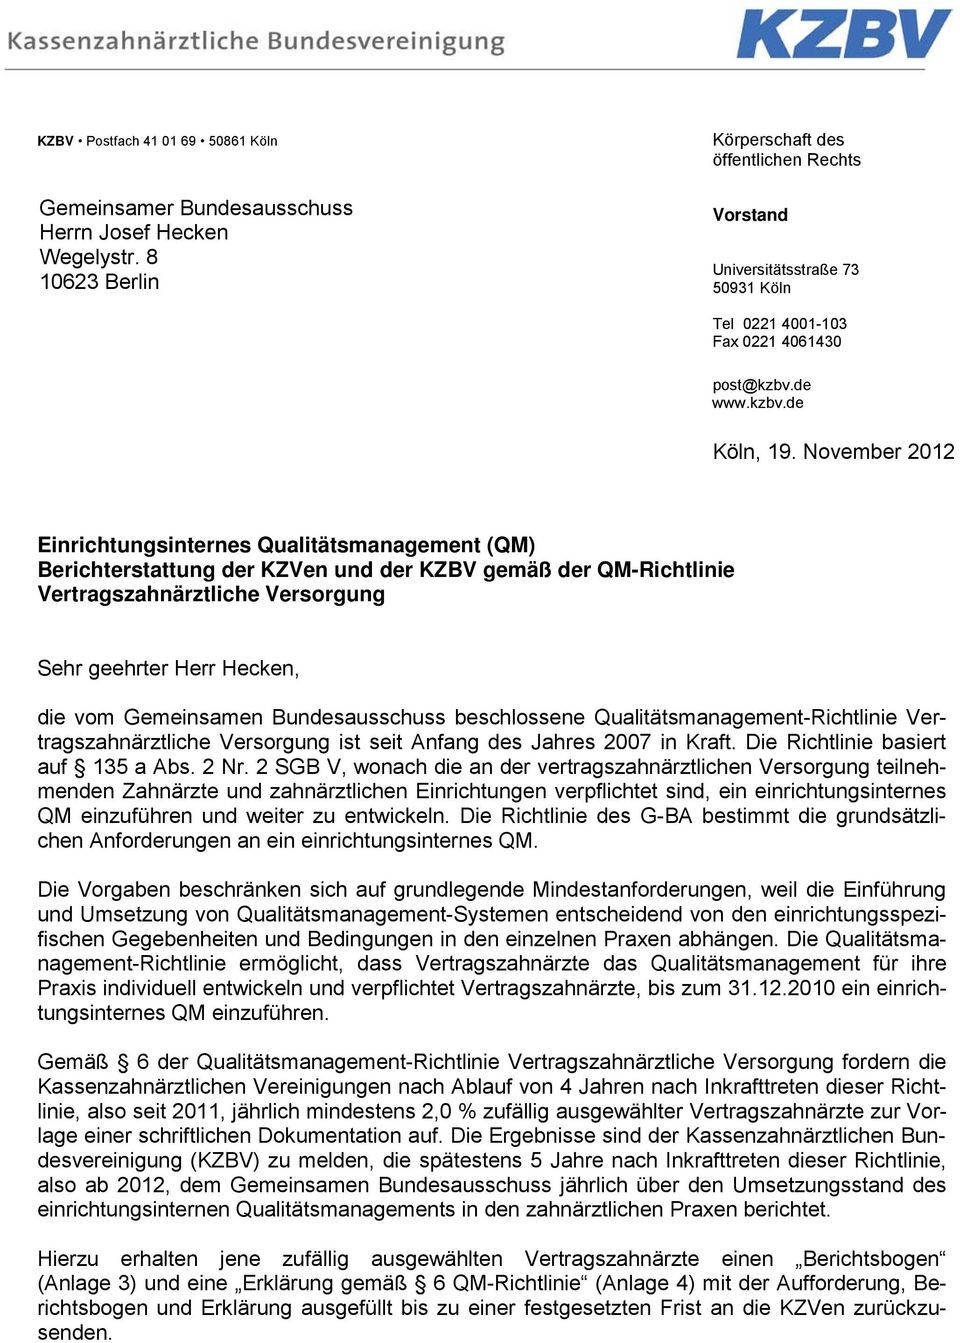 November 2012 Einrichtungsinternes Qualitätsmanagement (QM) Berichterstattung en und KZBV gemäß QM-Richtlinie Vertragszahnärztliche Versorgung Sehr geehrter Herr Hecken, die vom Gemeinsamen